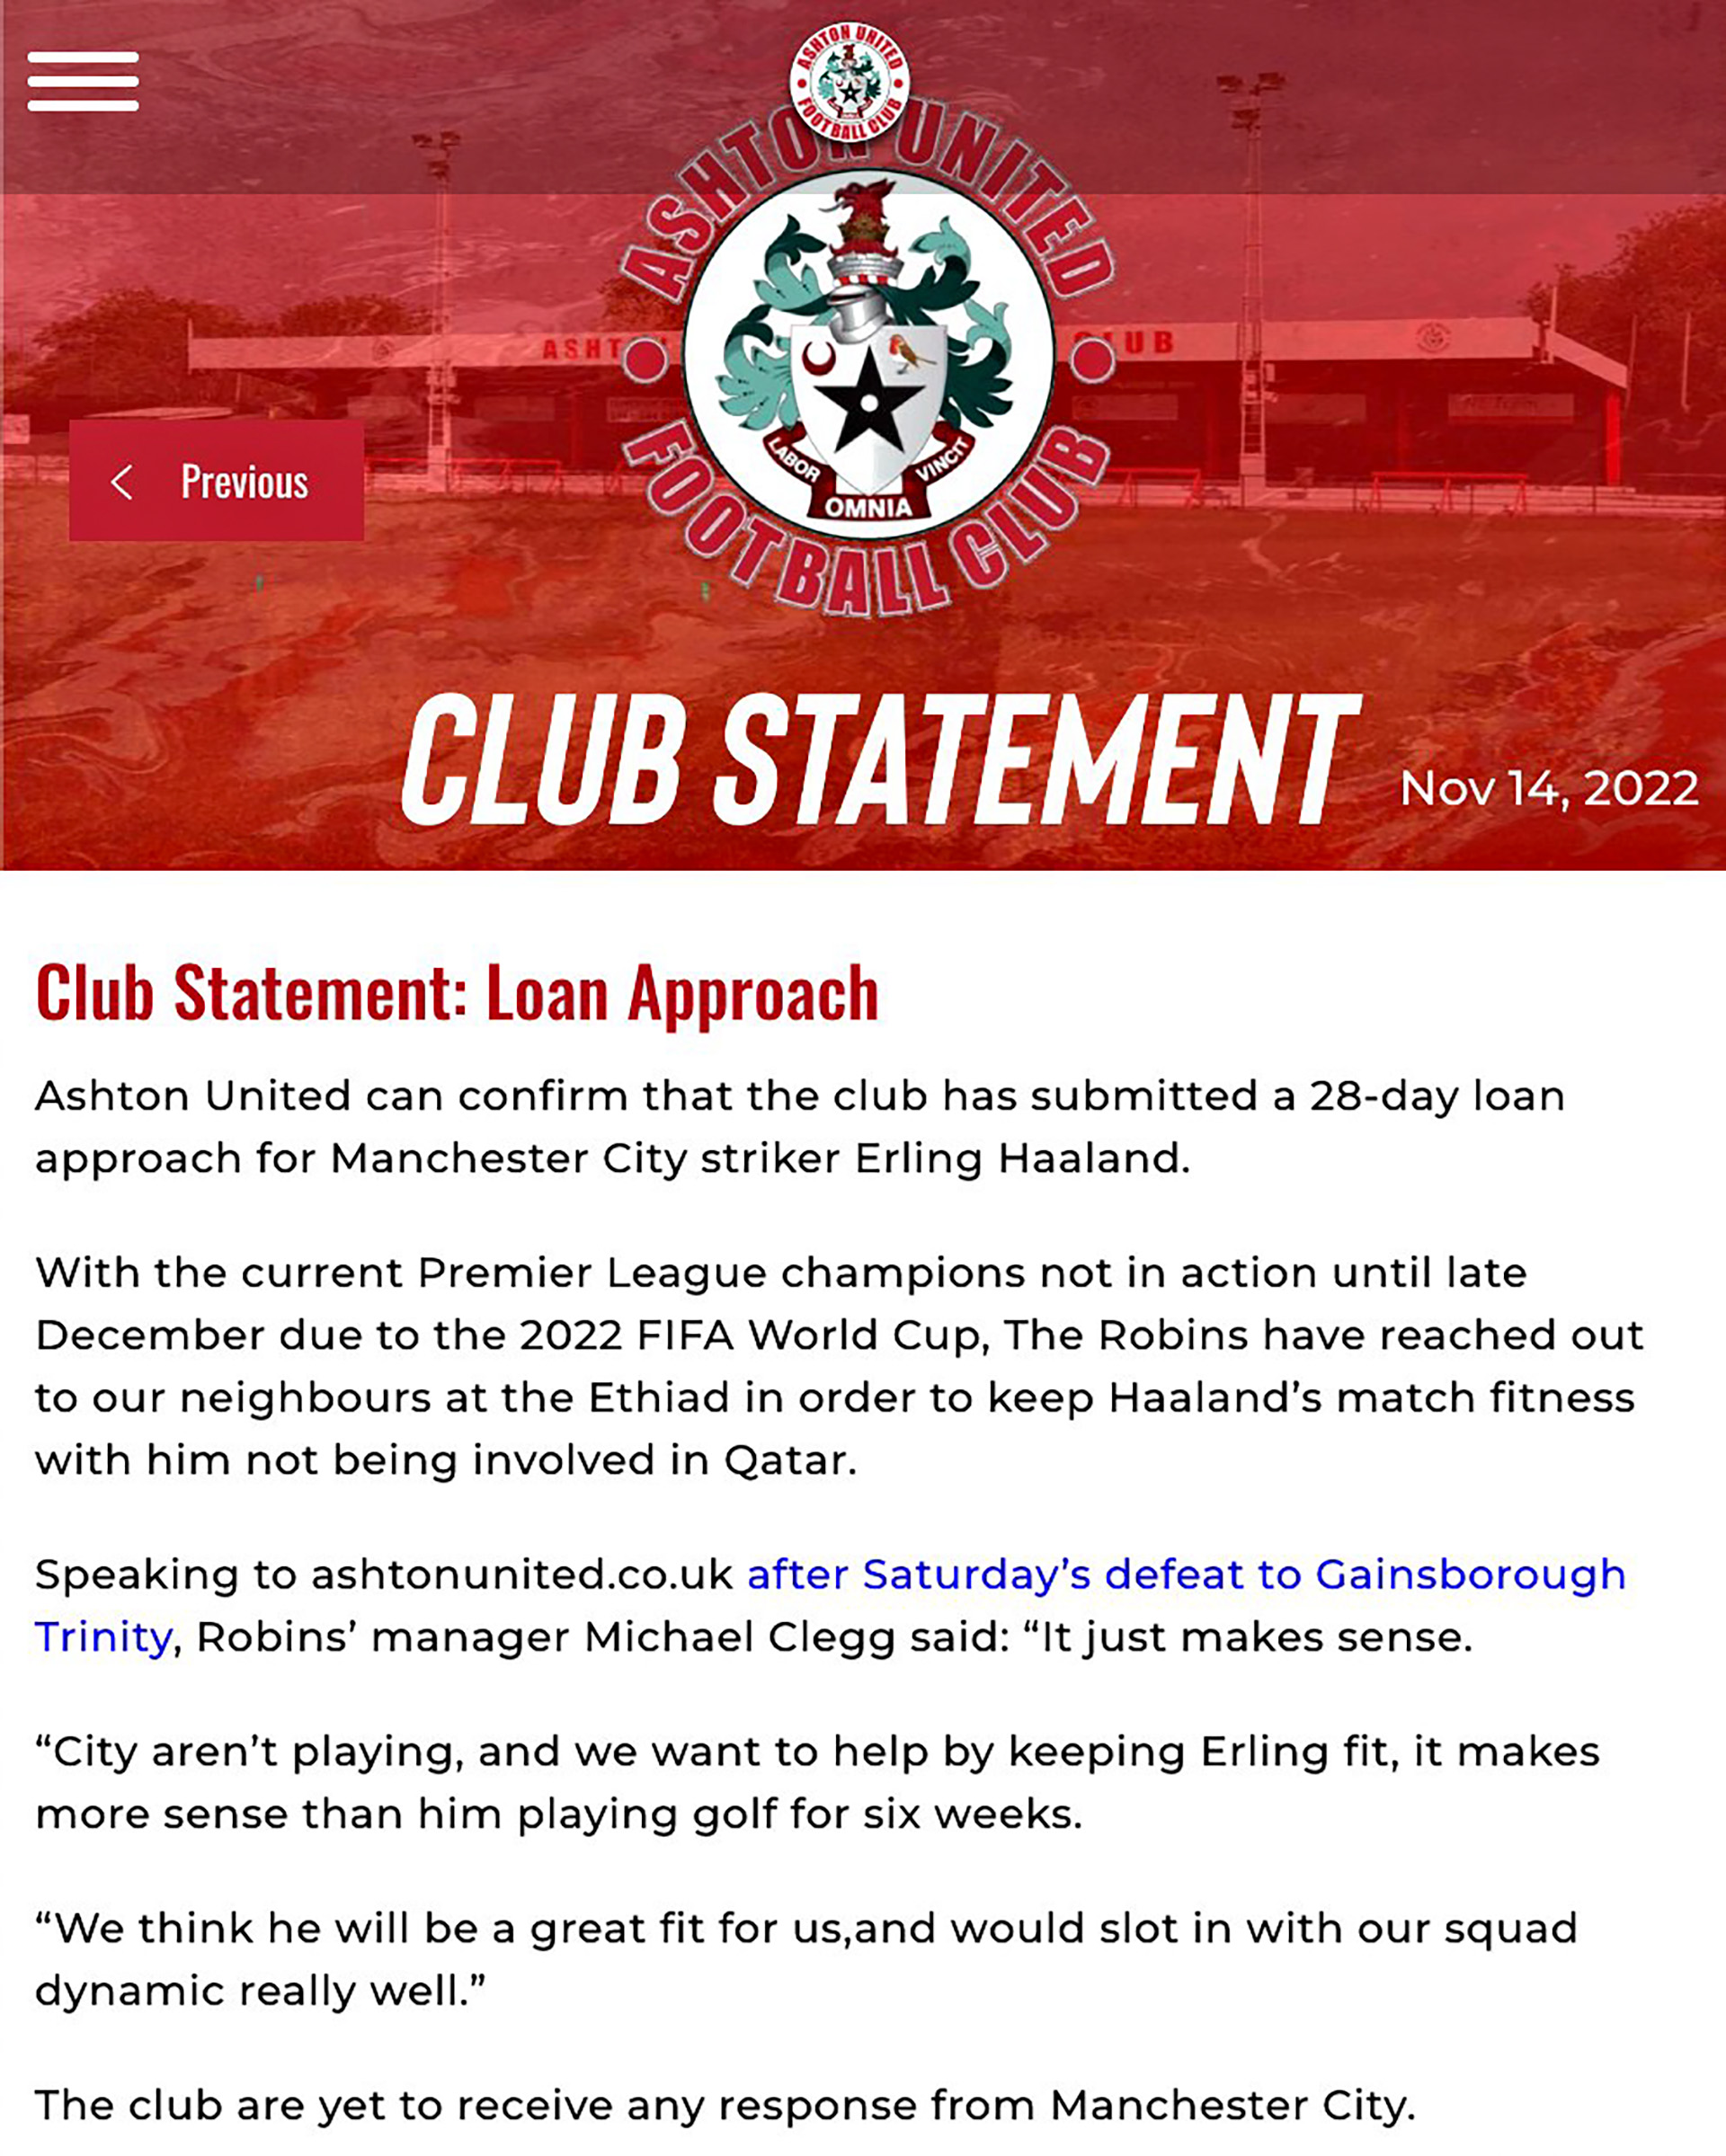 Ashton United's statement about their bid to Manchester City (@AshtonUnitedFC)